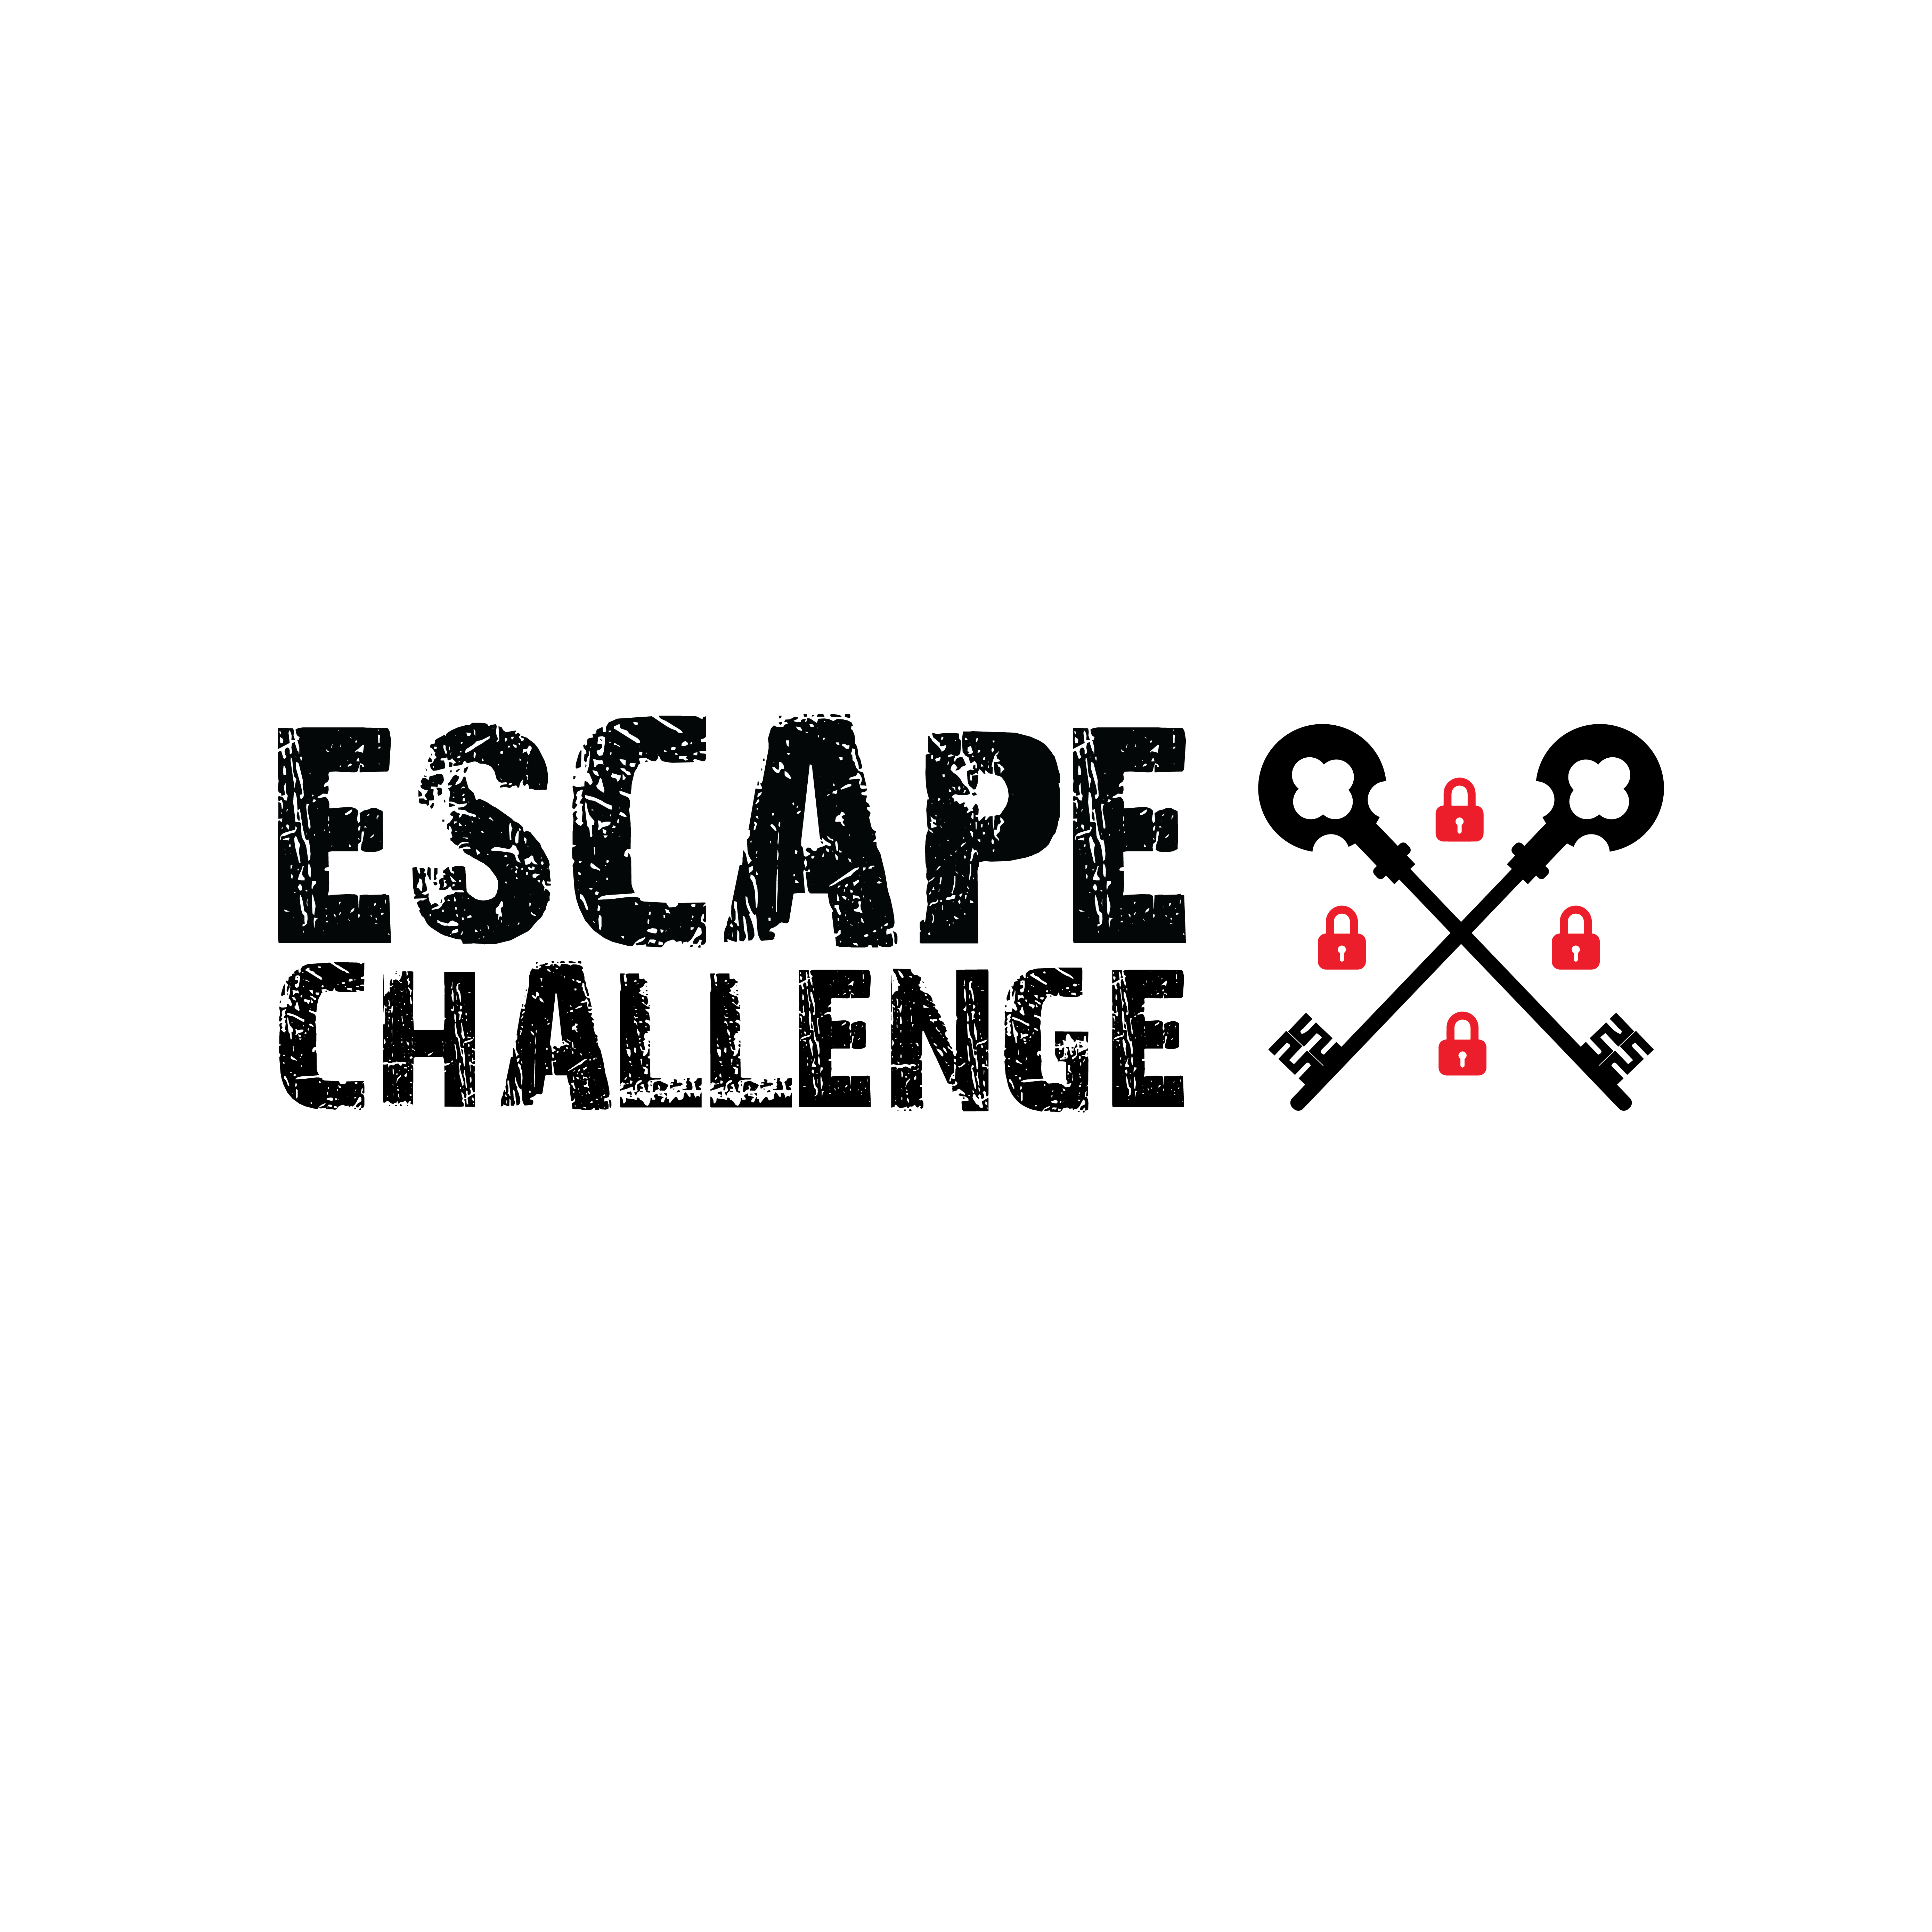 The Escape Challenge - Rochester, MN - Real-Life Escape Room